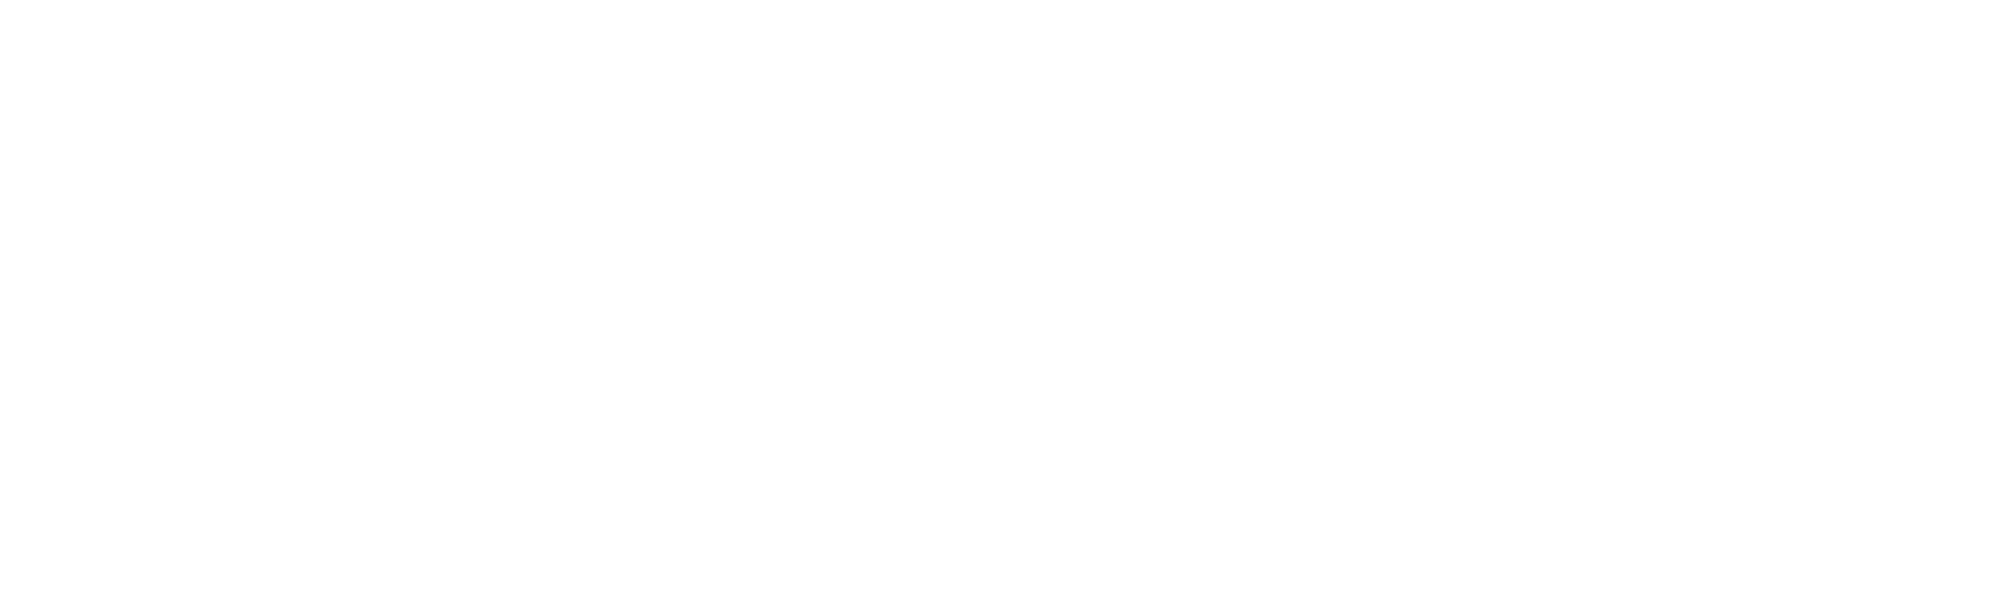 Logo der Rotisserie-Royale und des Gästehaus am Schlossberg